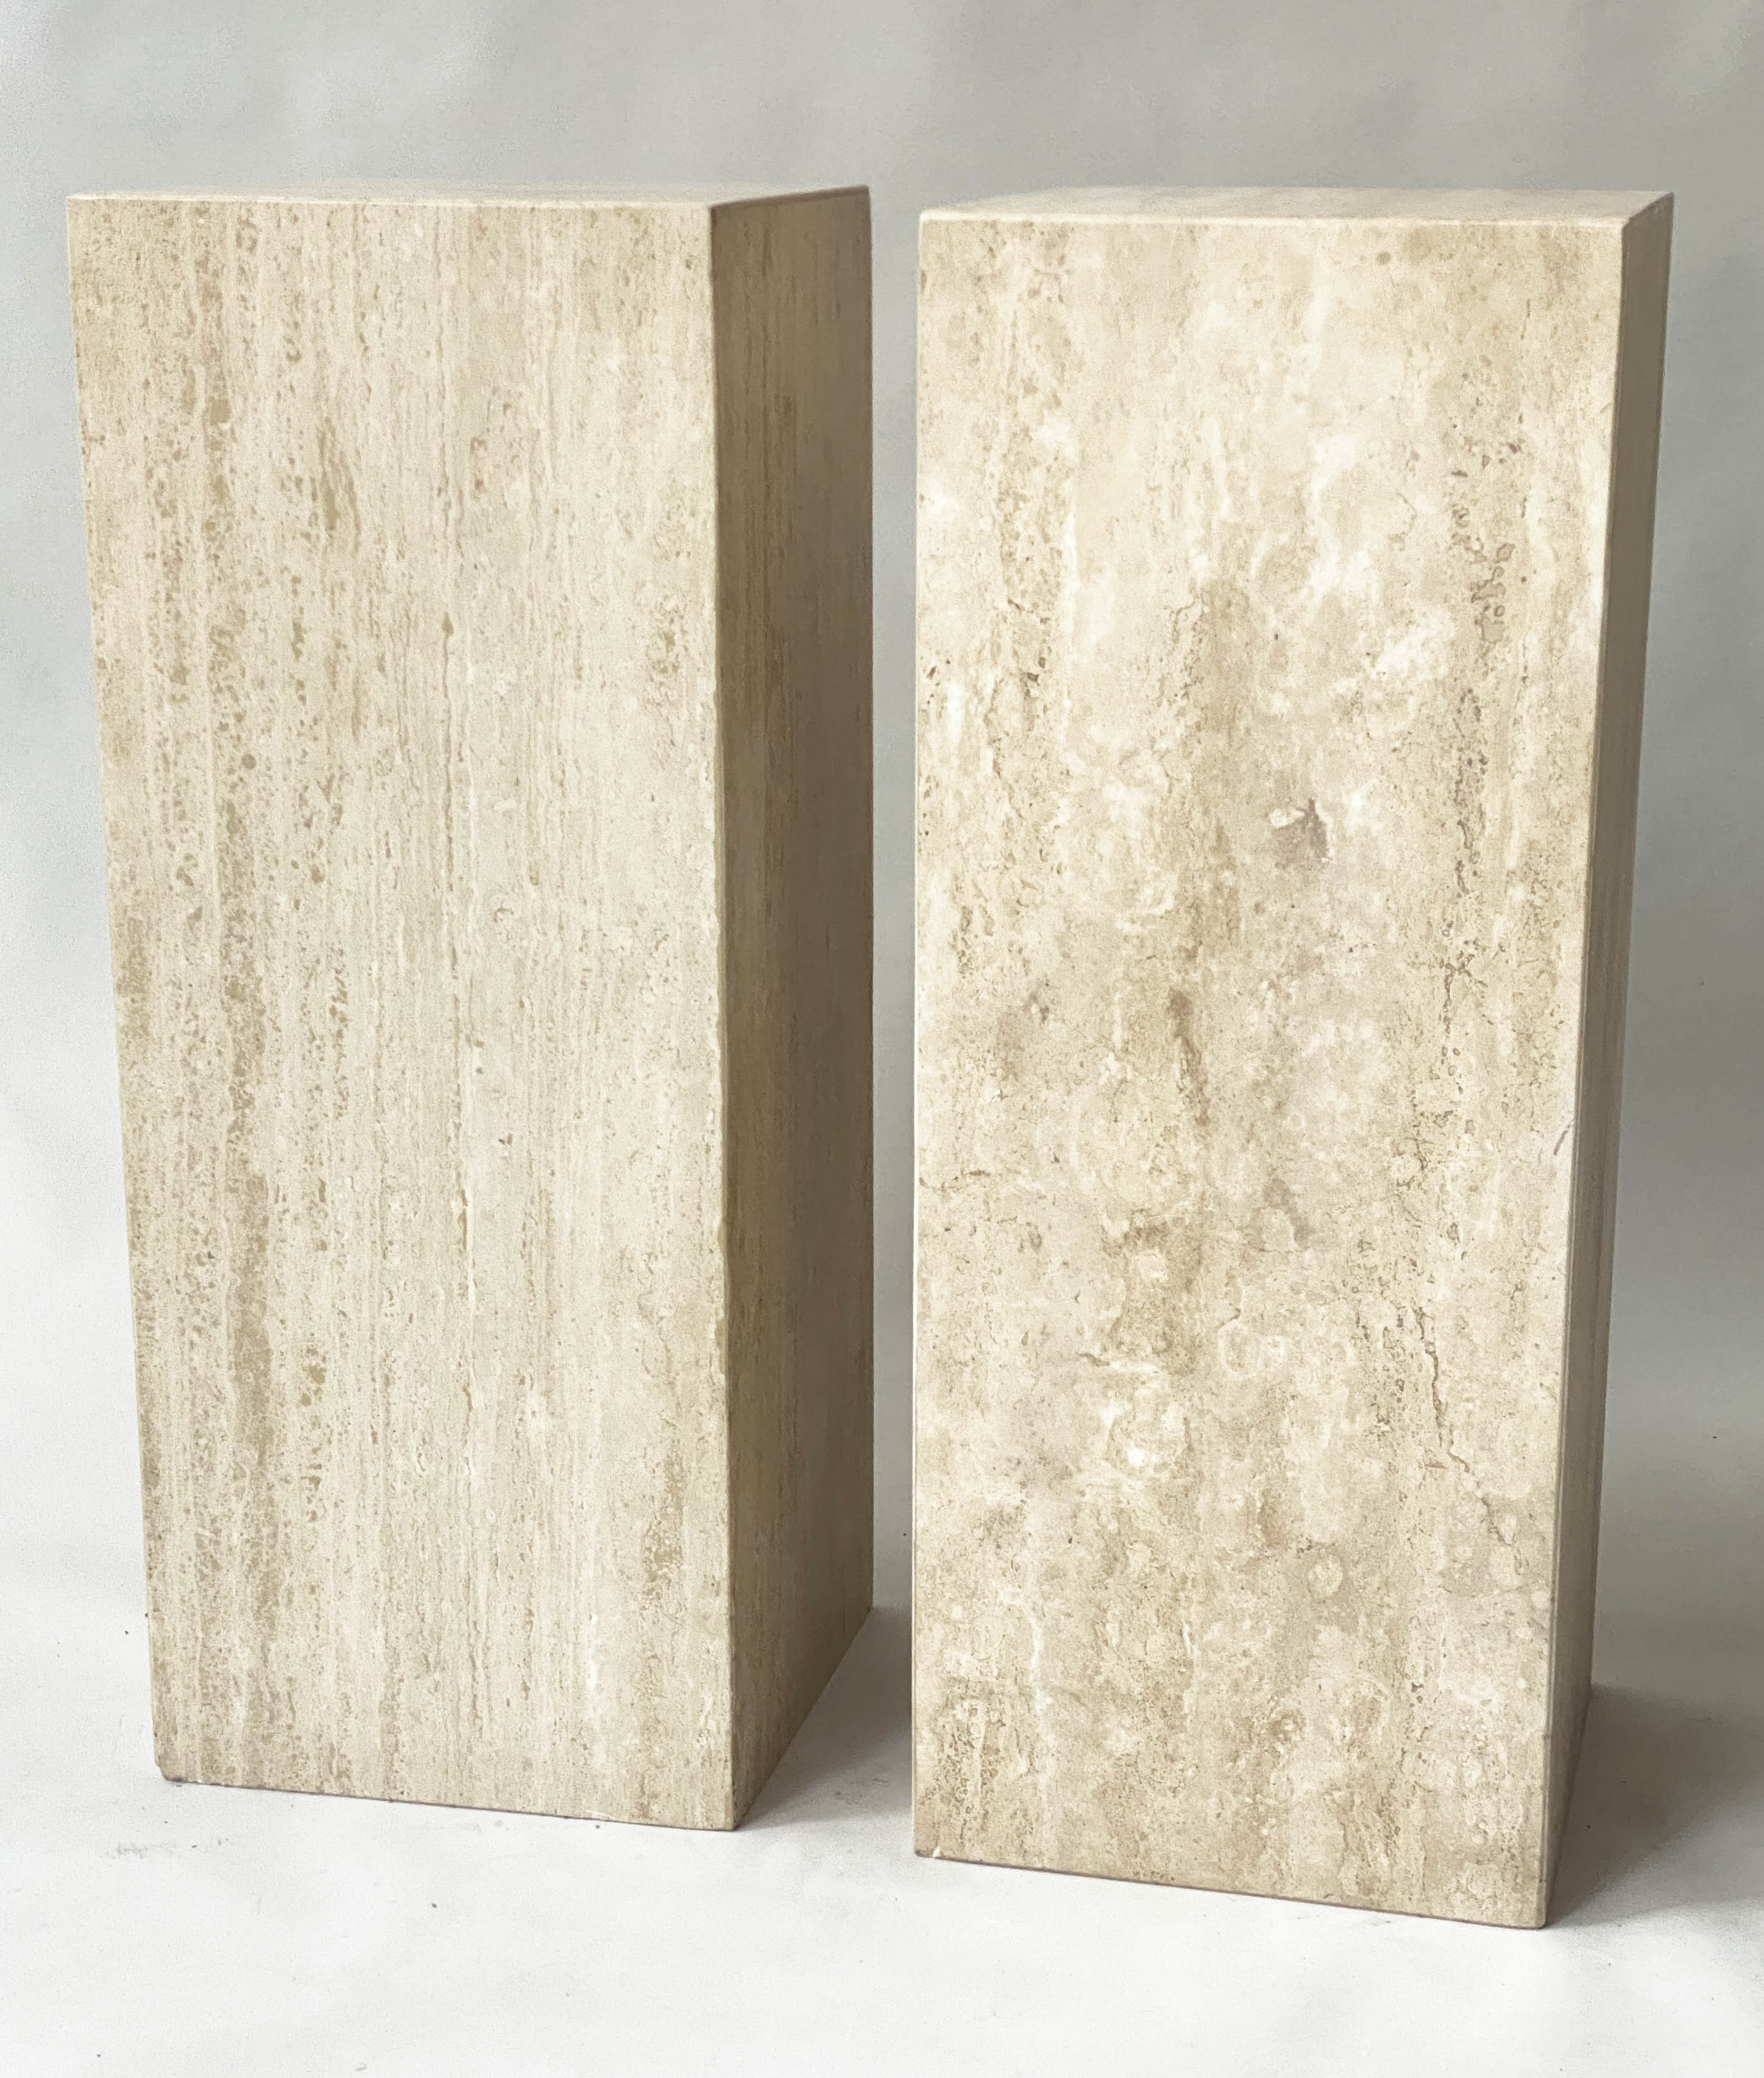 PEDESTALS, a pair, 1970s Italian travertine marble, 35cm x 35cm x 90cm H.